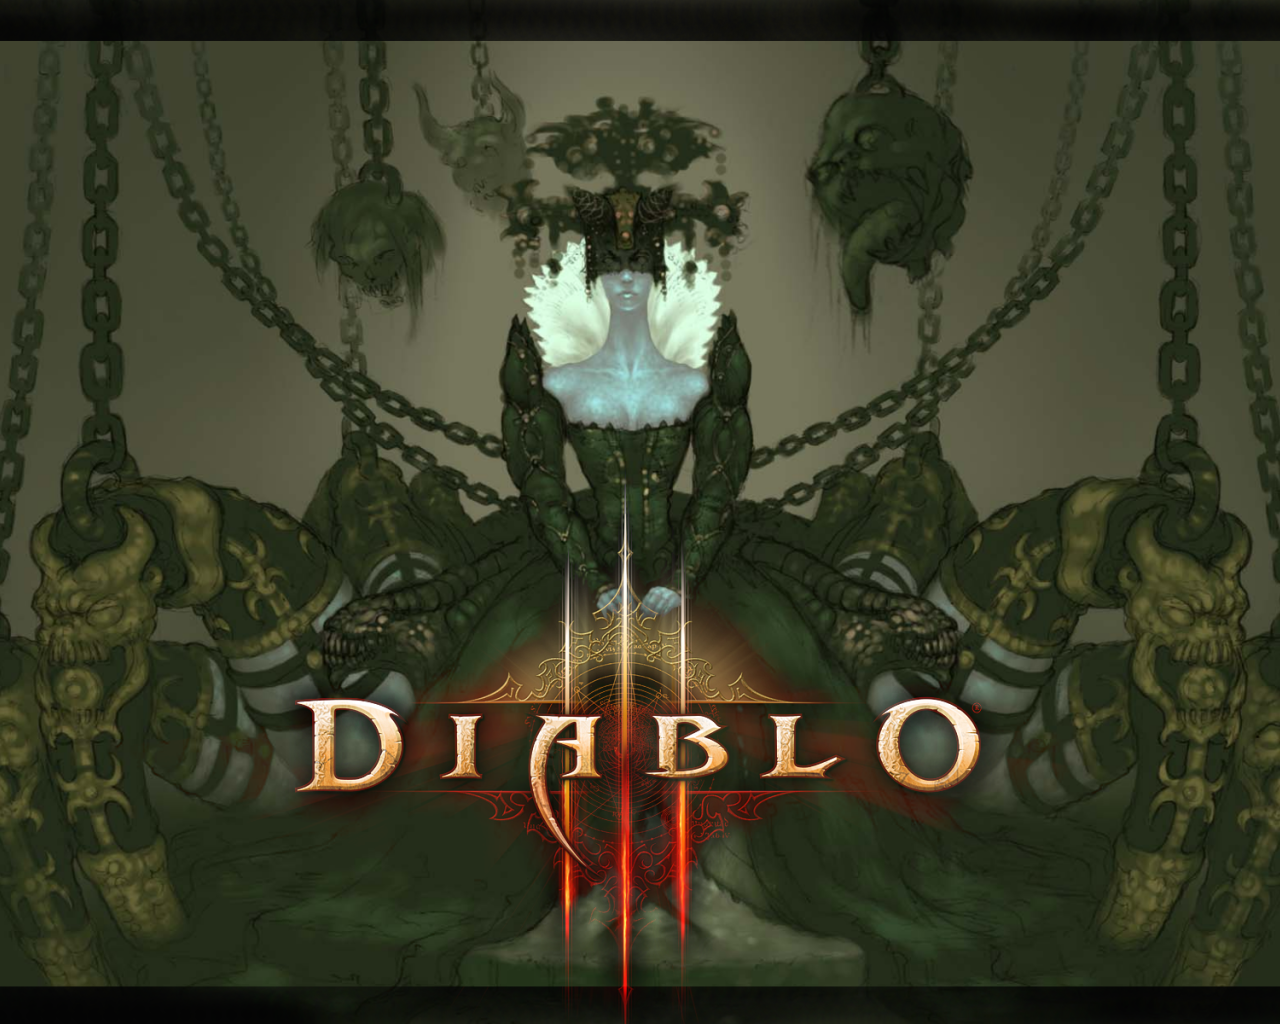  Diablo III: хозяйка пауков